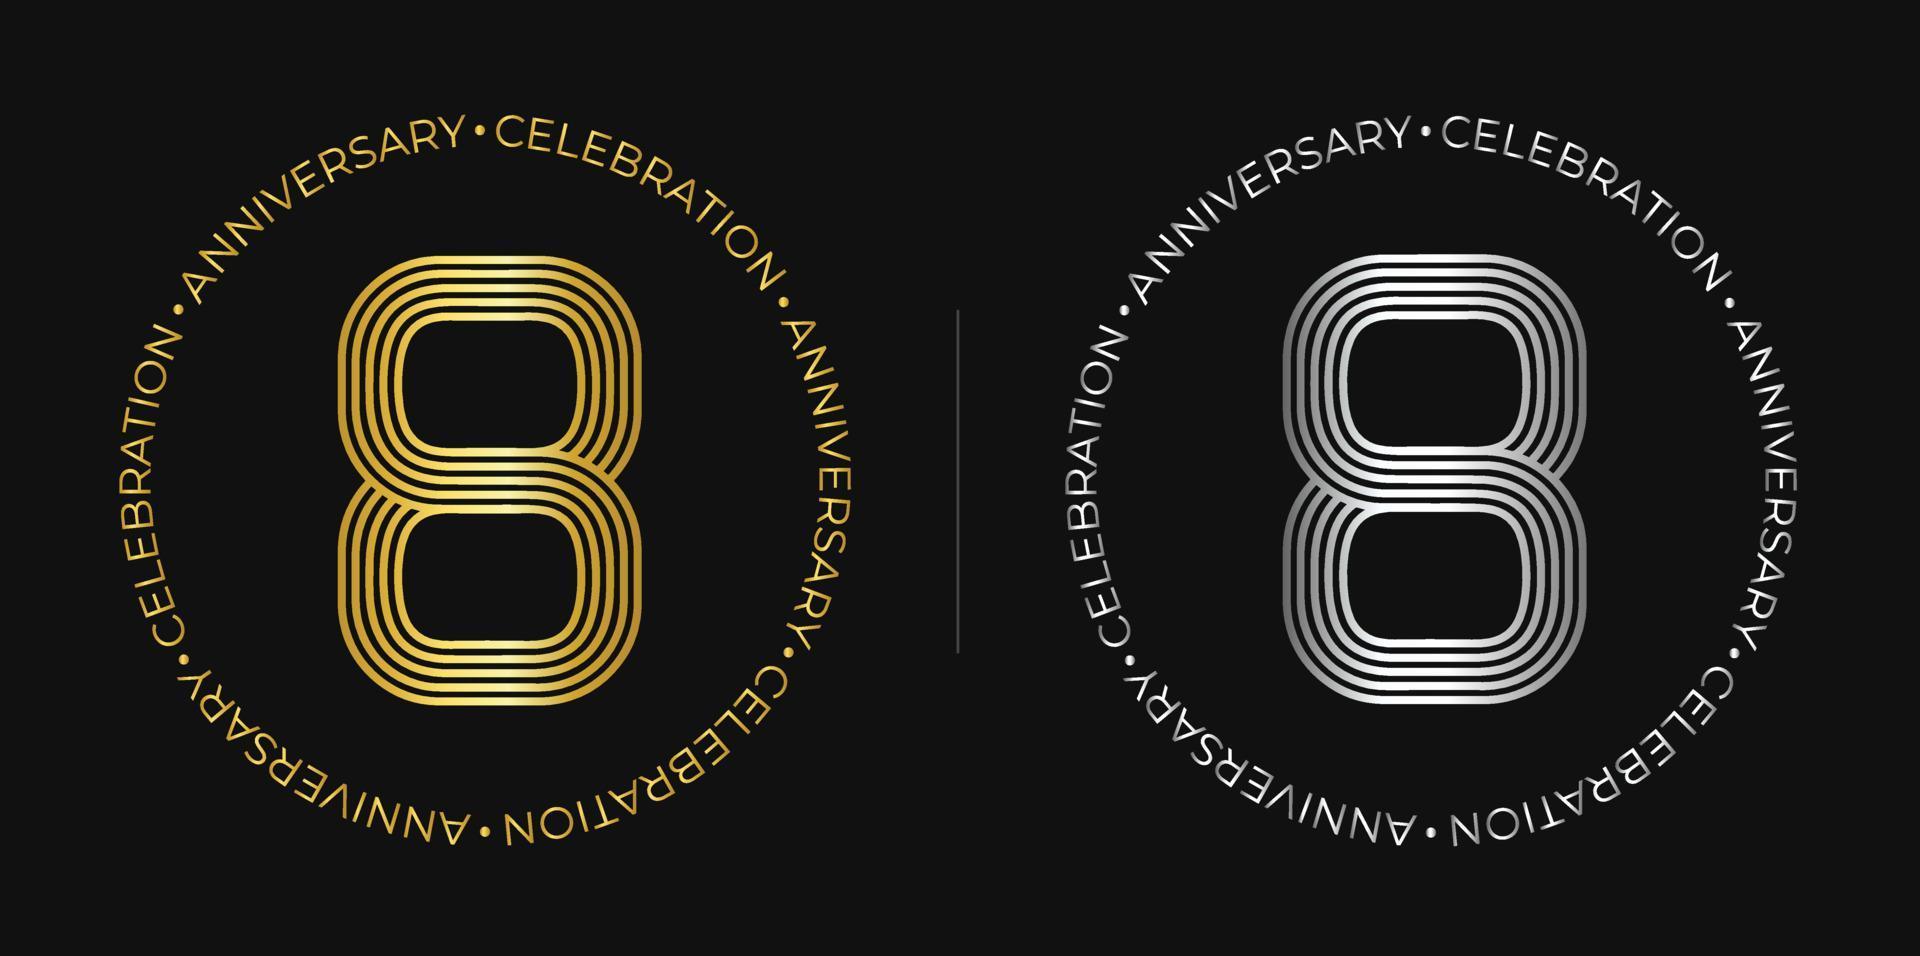 8vo cumpleaños. Banner de celebración de ocho años en colores dorado y plateado. logotipo circular con diseño de número original en líneas elegantes.s vector